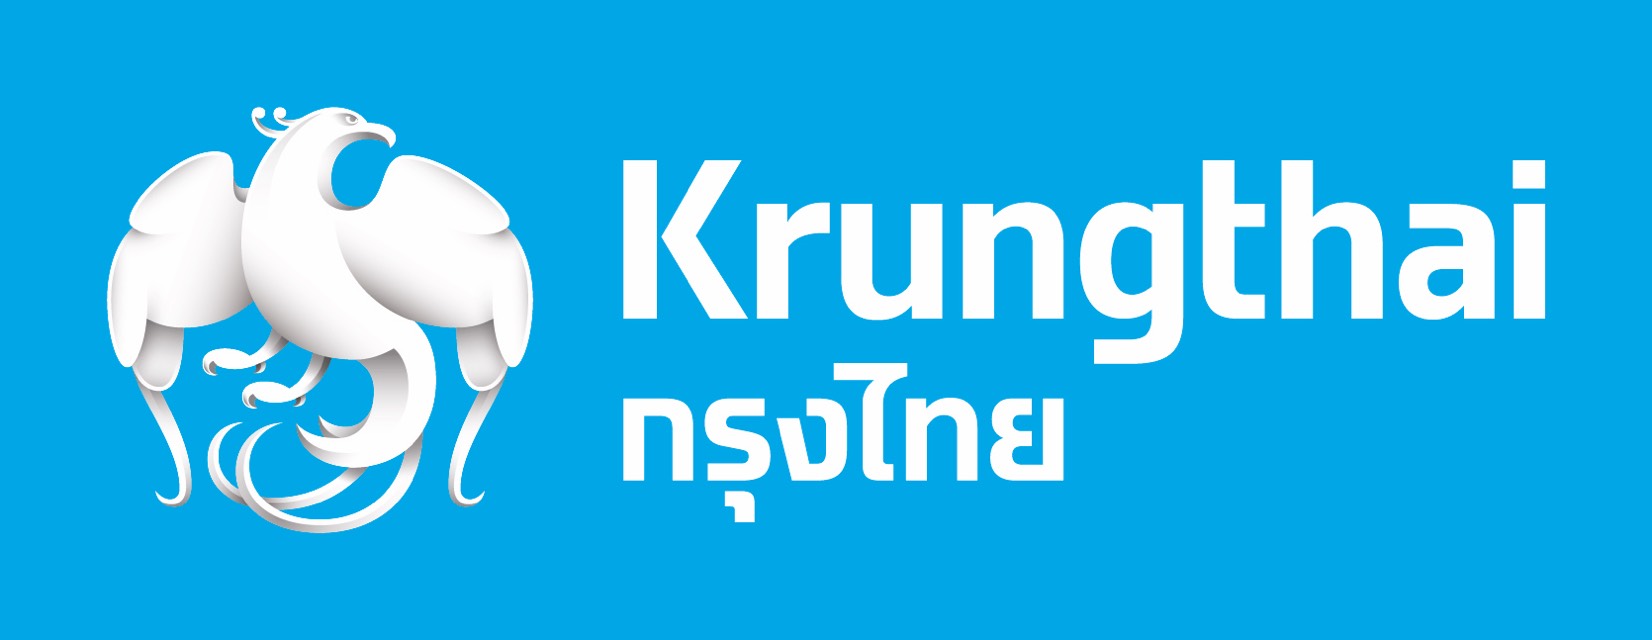 รัฐบาลไทย-ข่าวทำเนียบรัฐบาล- “กรุงไทย”  ปลื้มหุ้นกู้อนุพันธ์แฝงอิงดัชนีแบรนด์หรูระดับโลก กระแสตอบรับ “ล้นหลาม”  รับดัชนีปรับขึ้นต่อเนื่อง